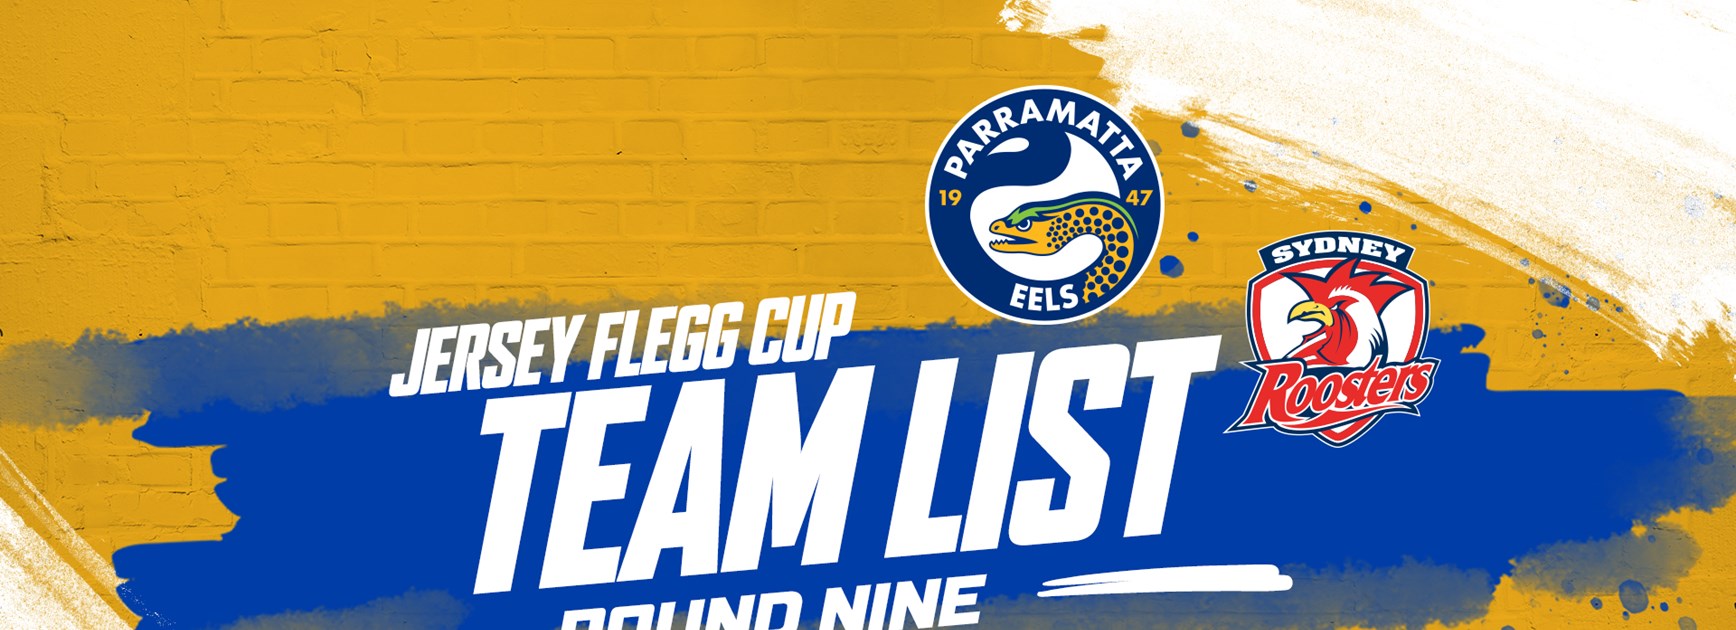 Jersey Flegg Cup Team List - Eels v Roosters, Round Nine